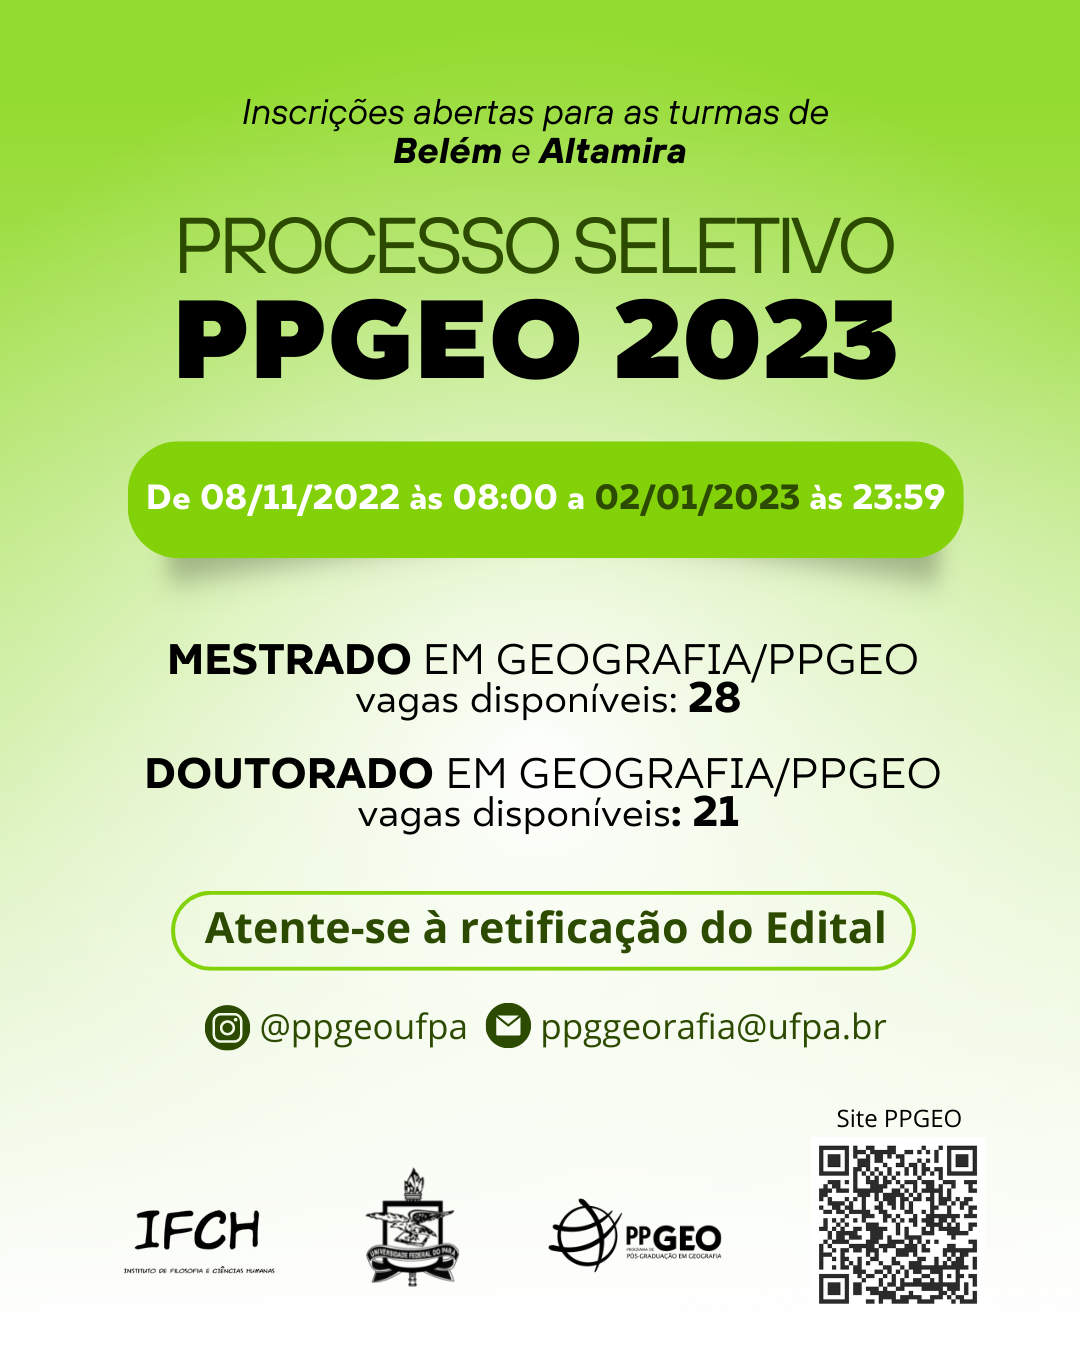 Banner com informações do processo seletivo do PPGEO